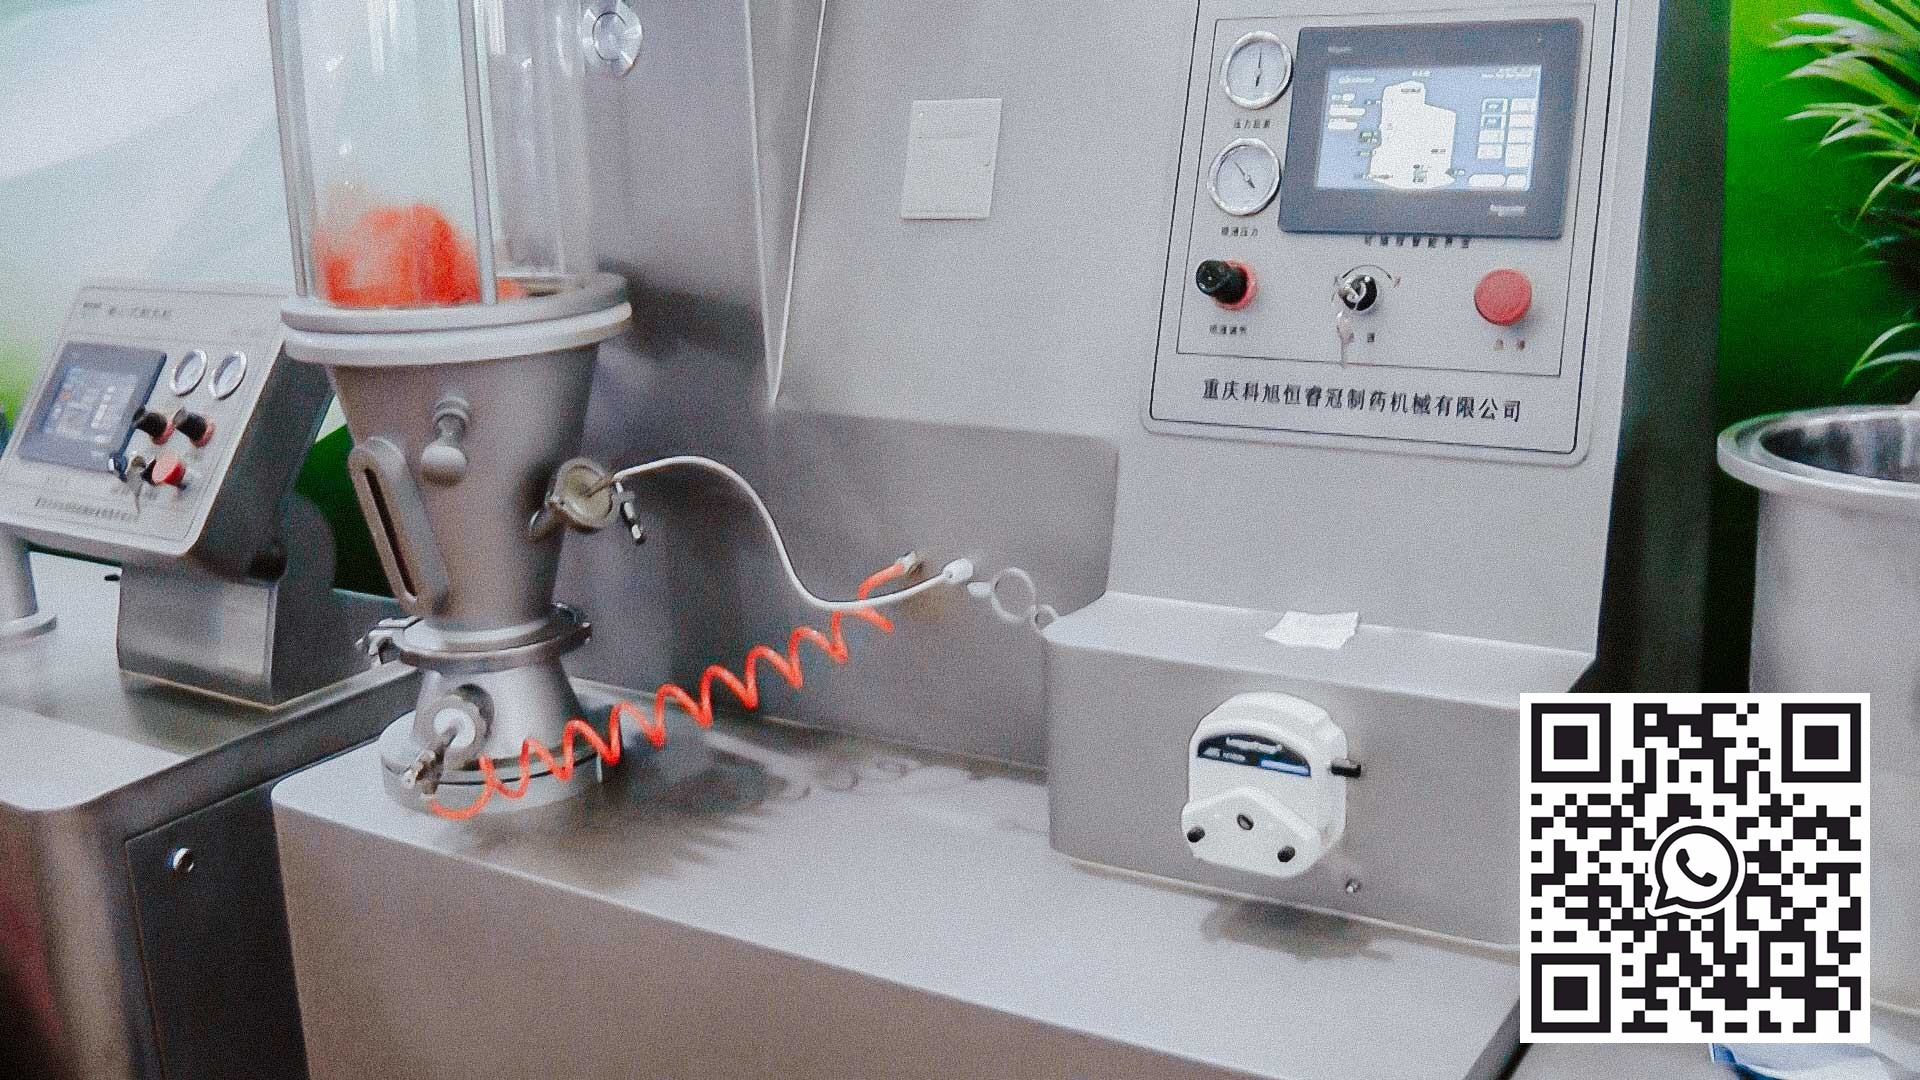 ペレット製造のための流動床での乾燥および造粒のための実験装置